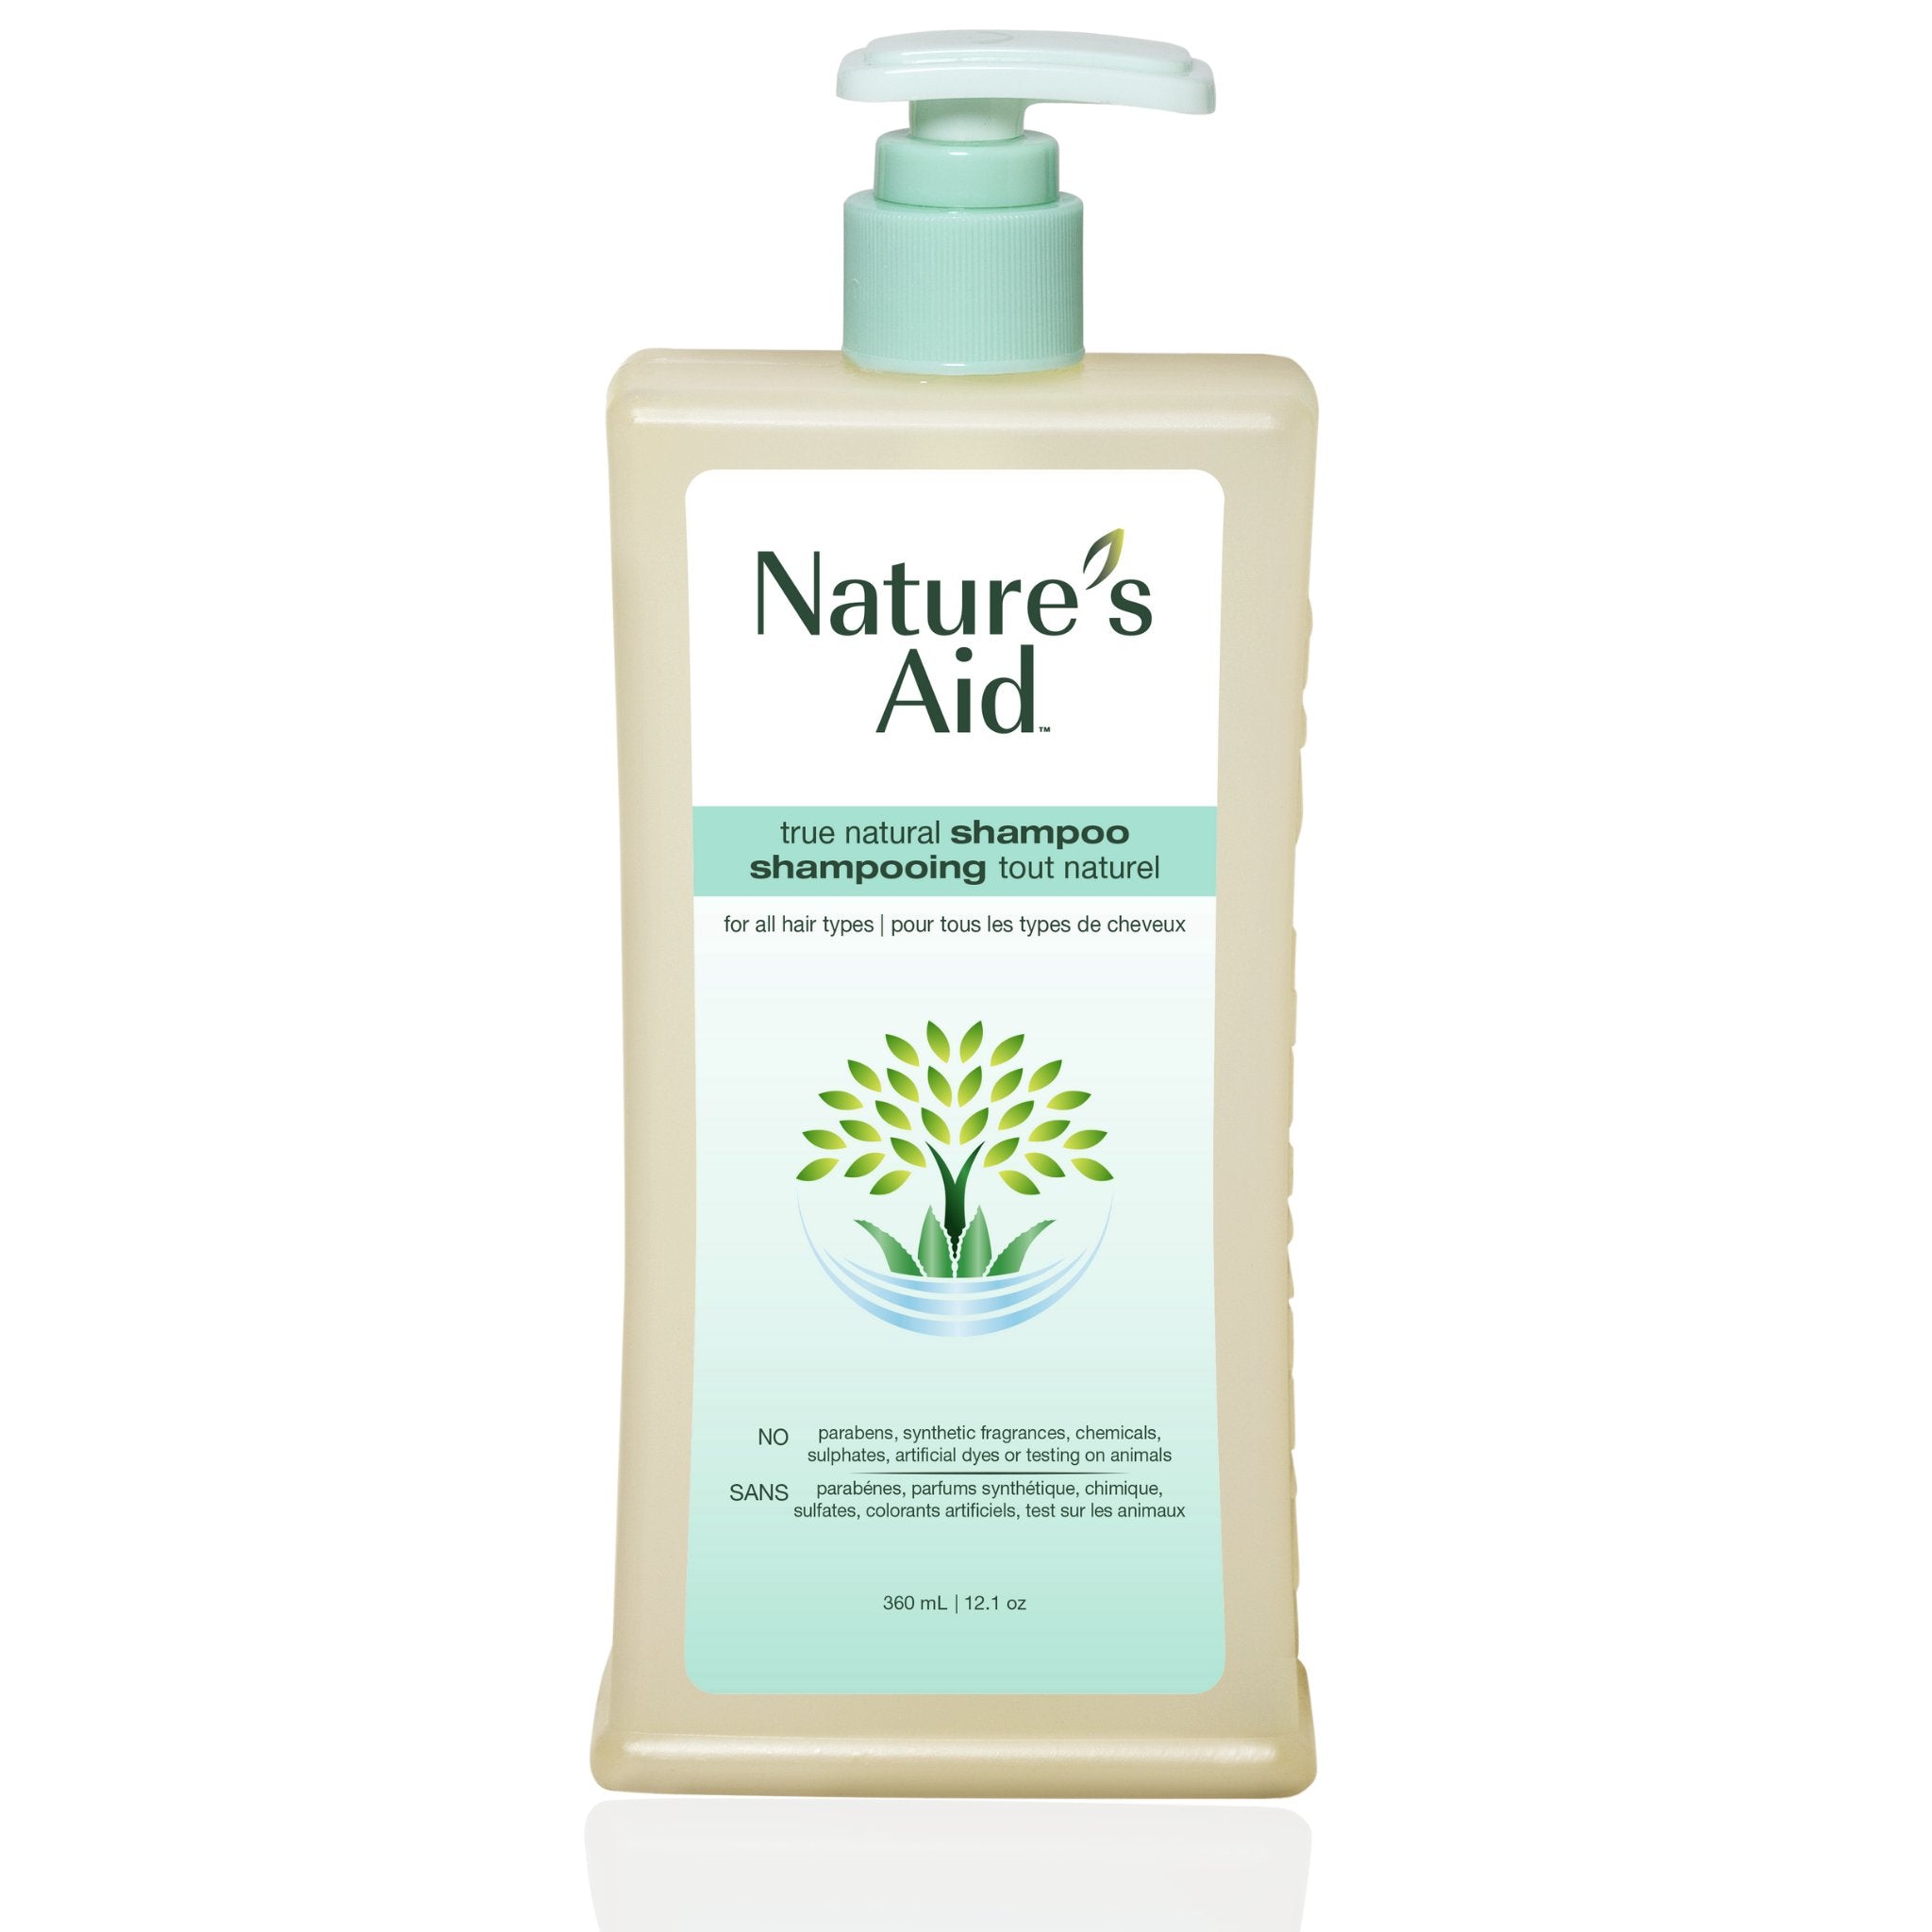 Shampoo | 360ml - Nature's Aid, hair care, lavender